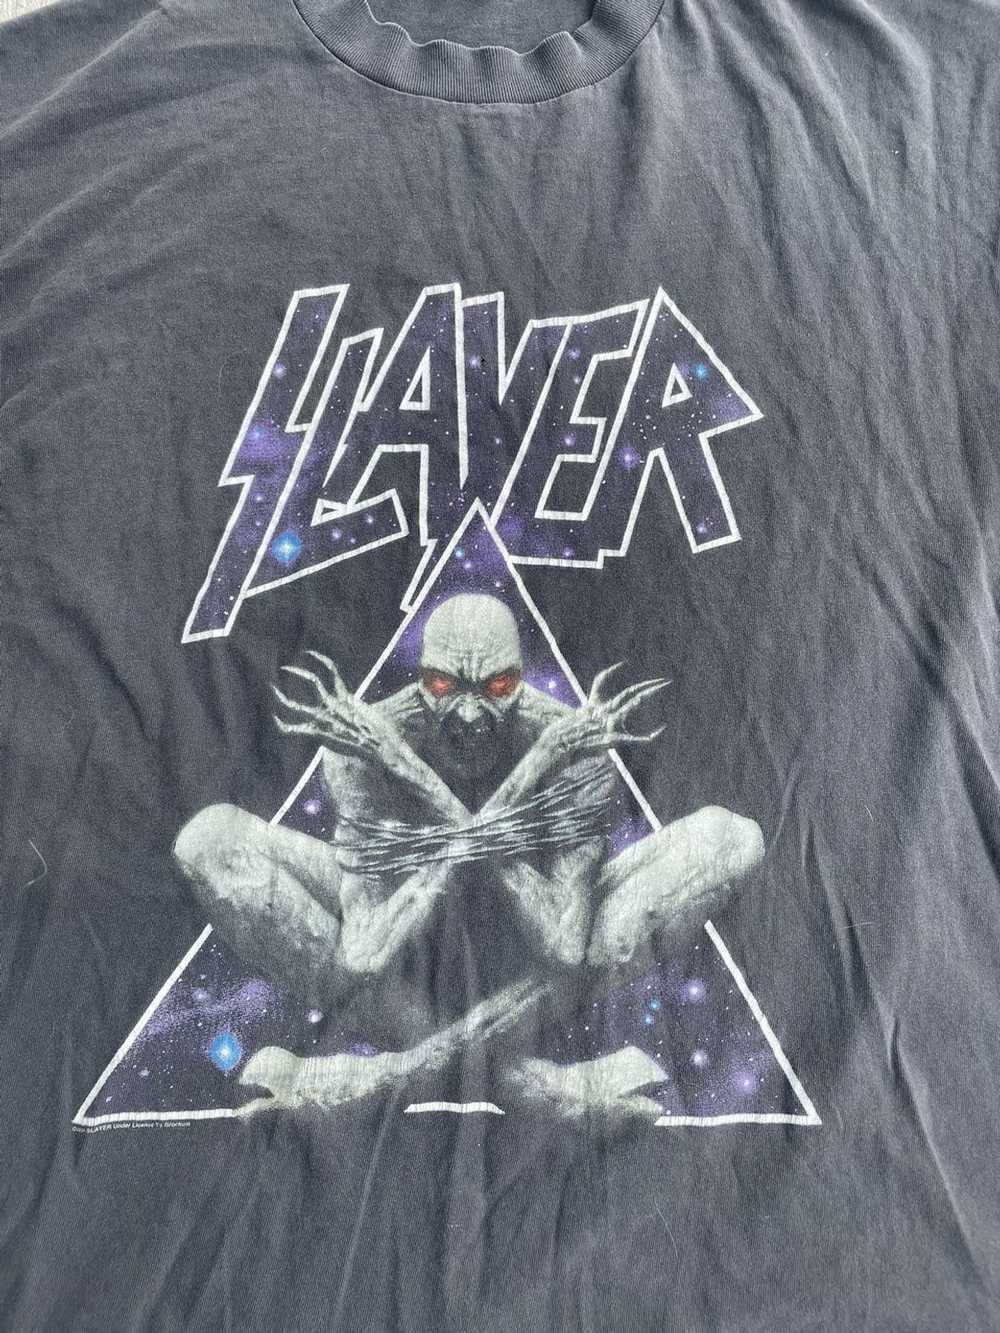 Slayer divine intervention hoodie - Gem